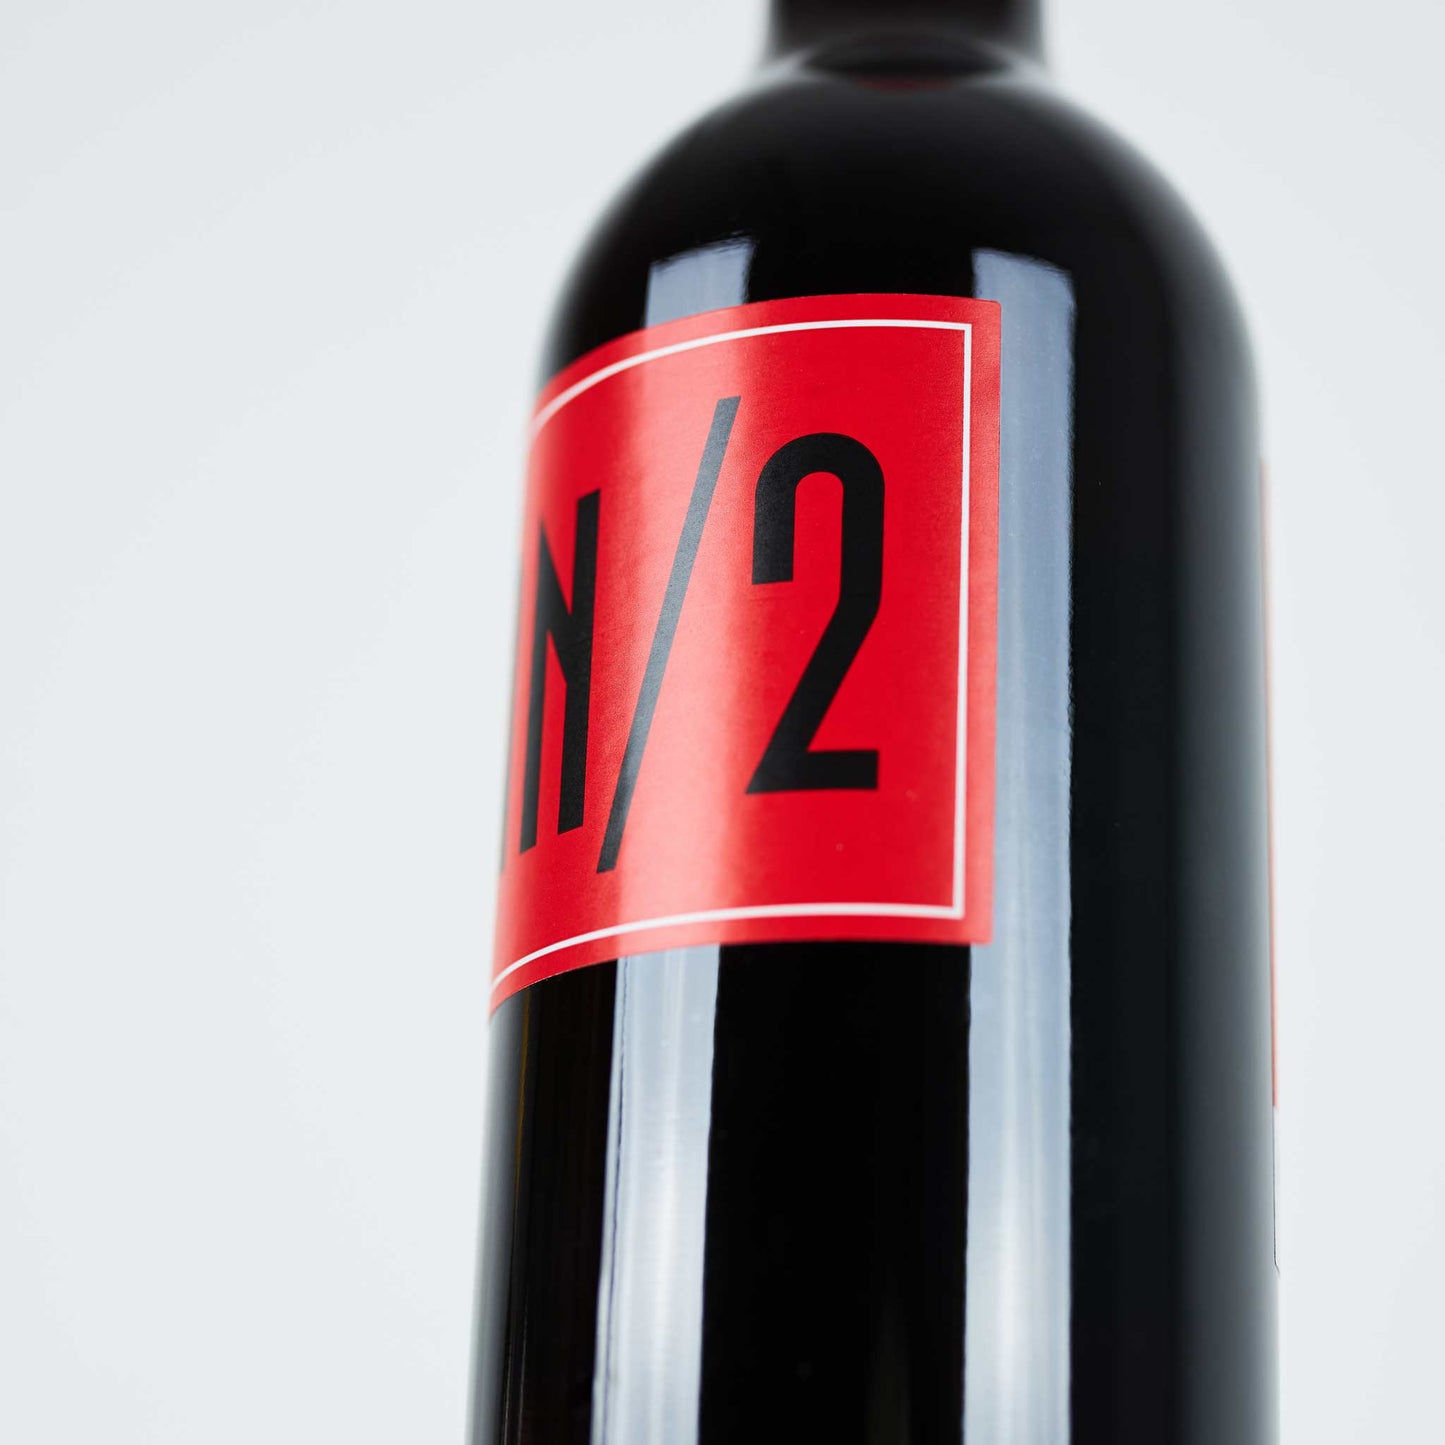 Rotweinflasche seitlich fotografiert, Nahaufnahme des roten Etiketts AN/2